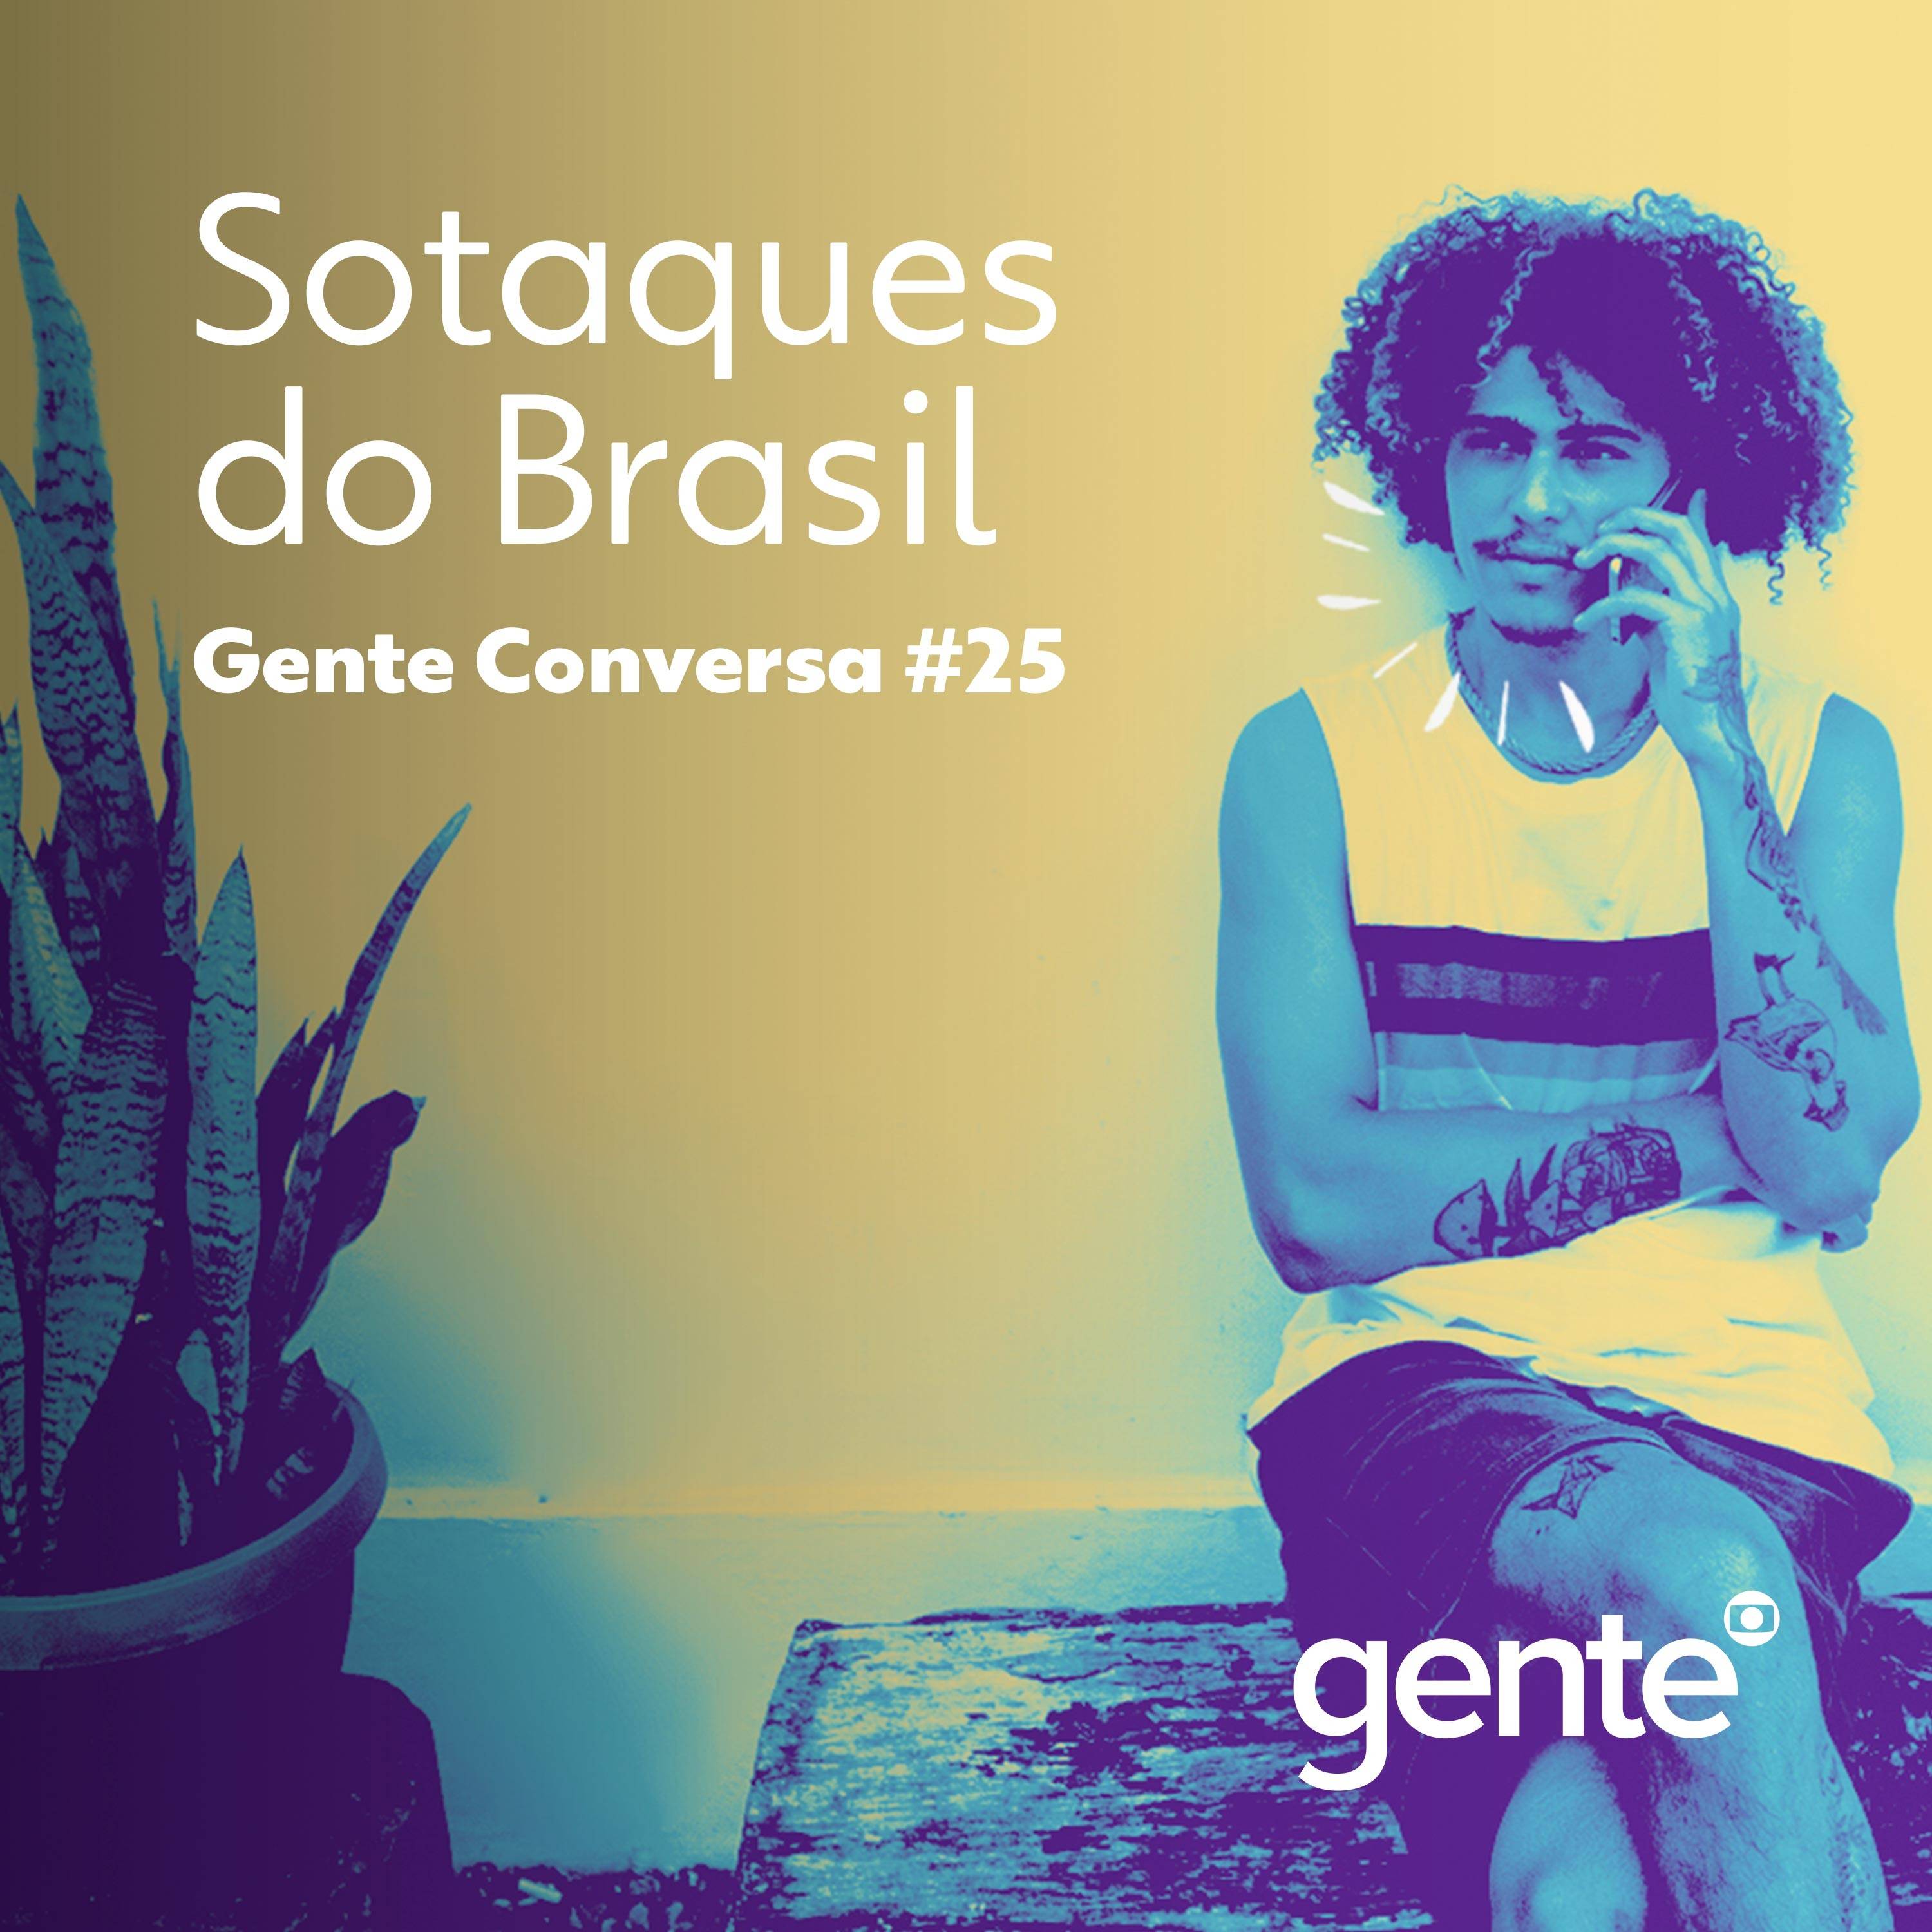 Gente Conversa #25 | Sotaques do Brasil